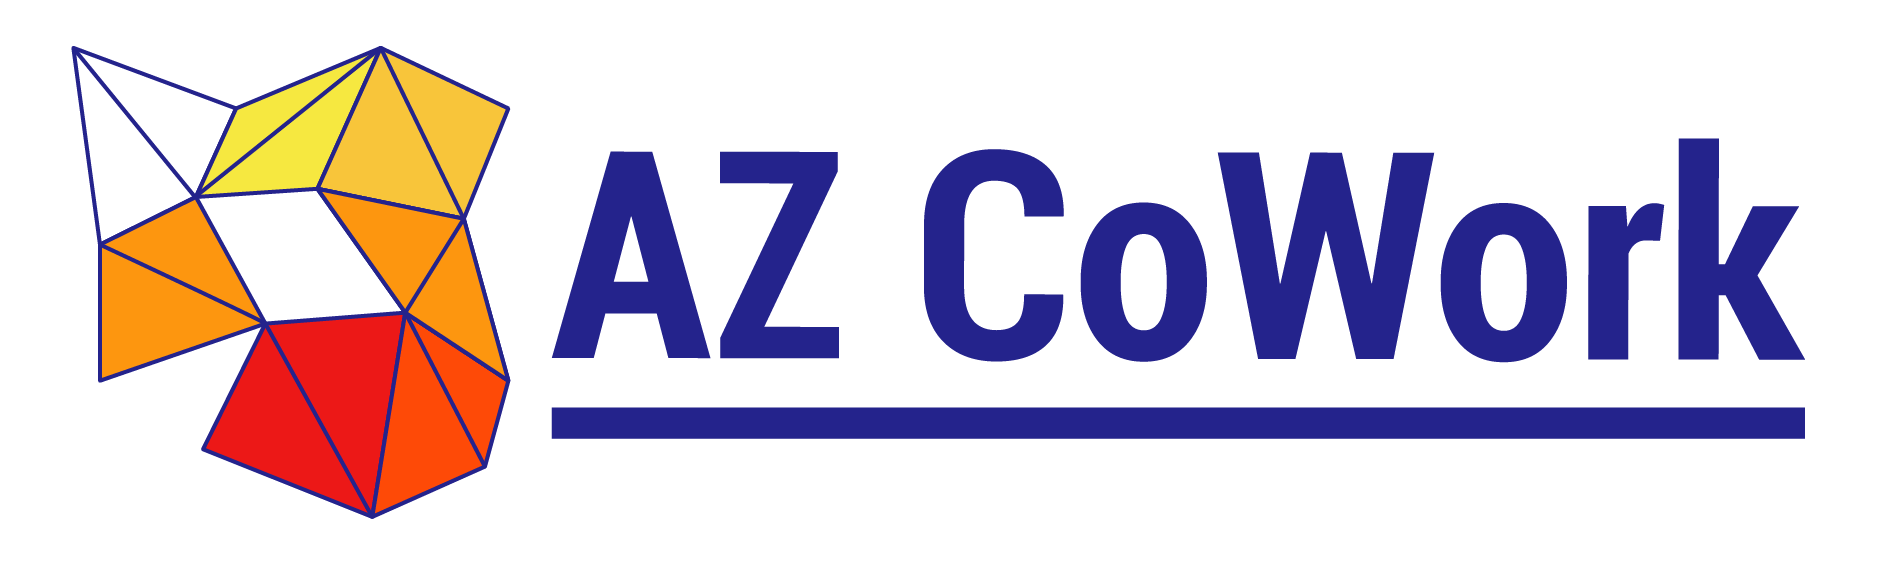 AZ Co Work logo